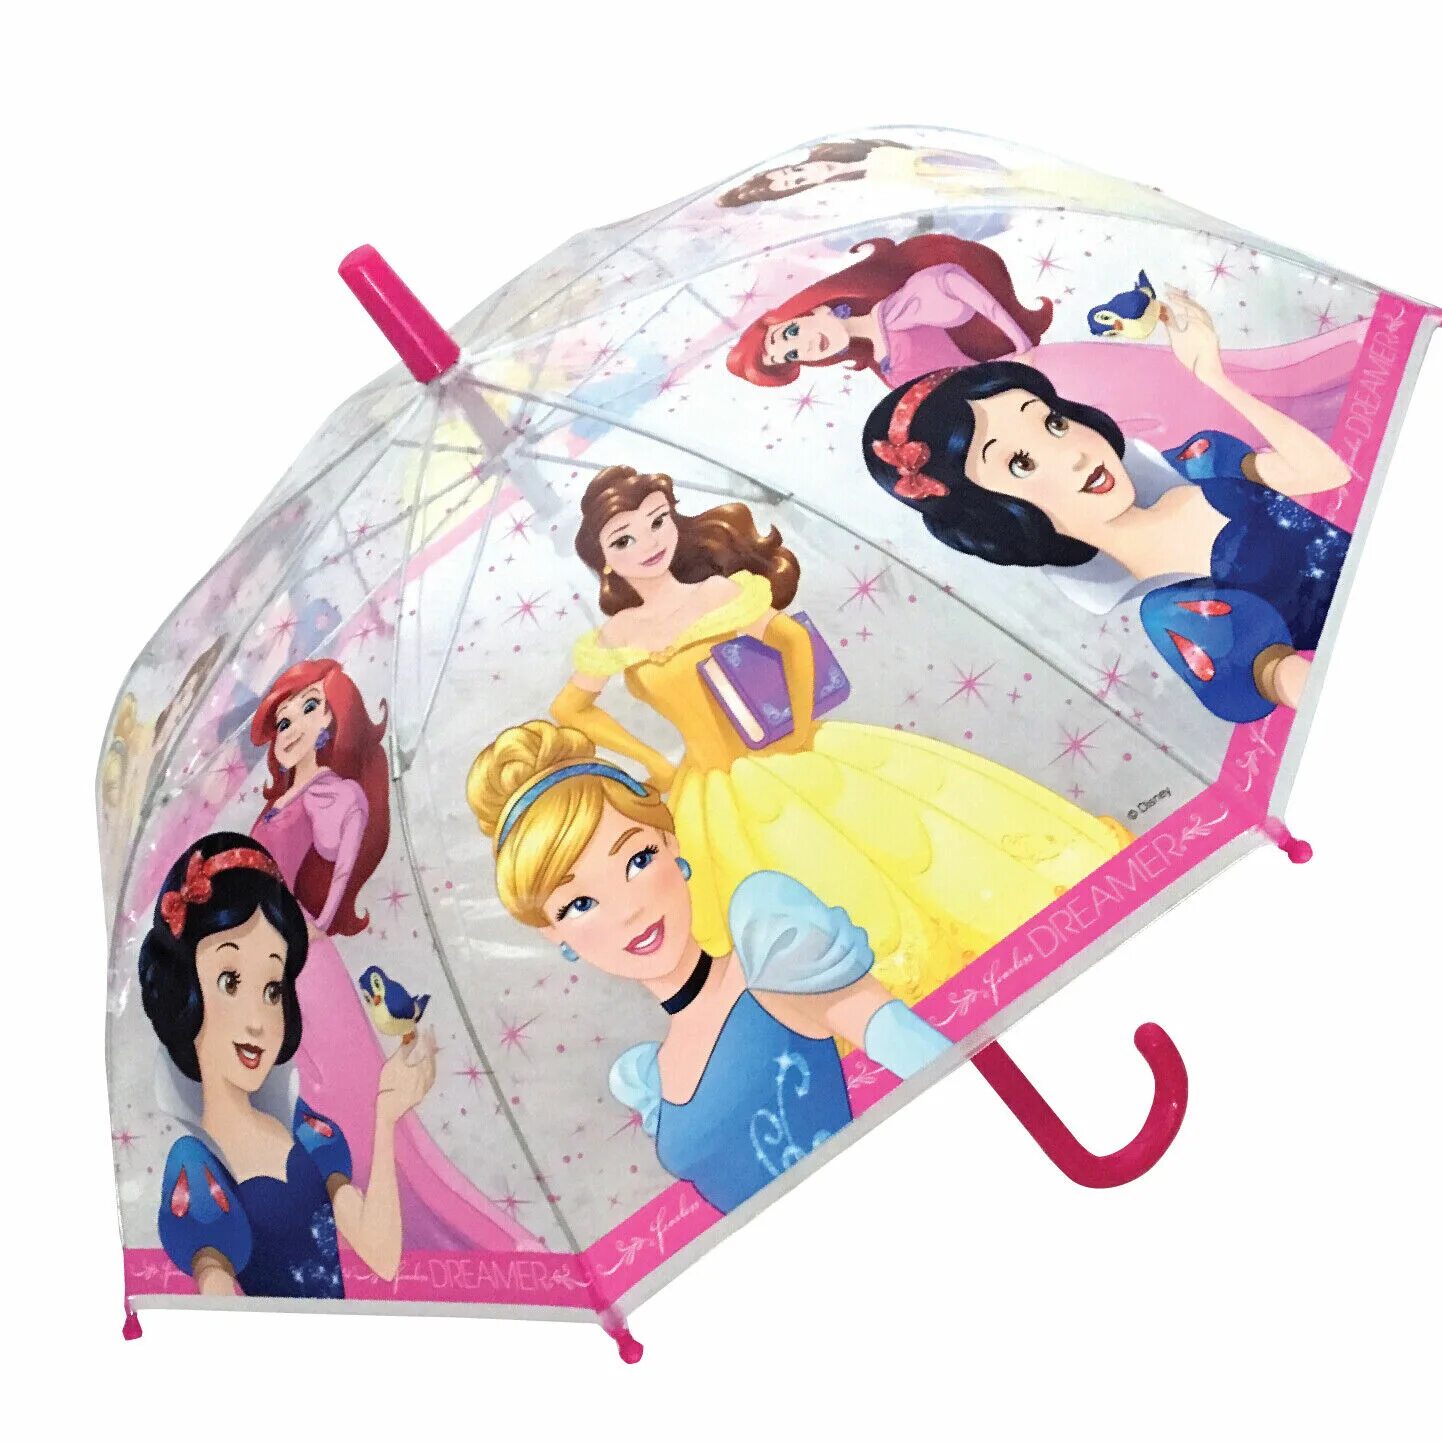 Герой зонтик. Зонтик детский Дисней принцесс. Зонт "принцесса". Зонт принцессы Диснея. Принцесса с зонтиком.